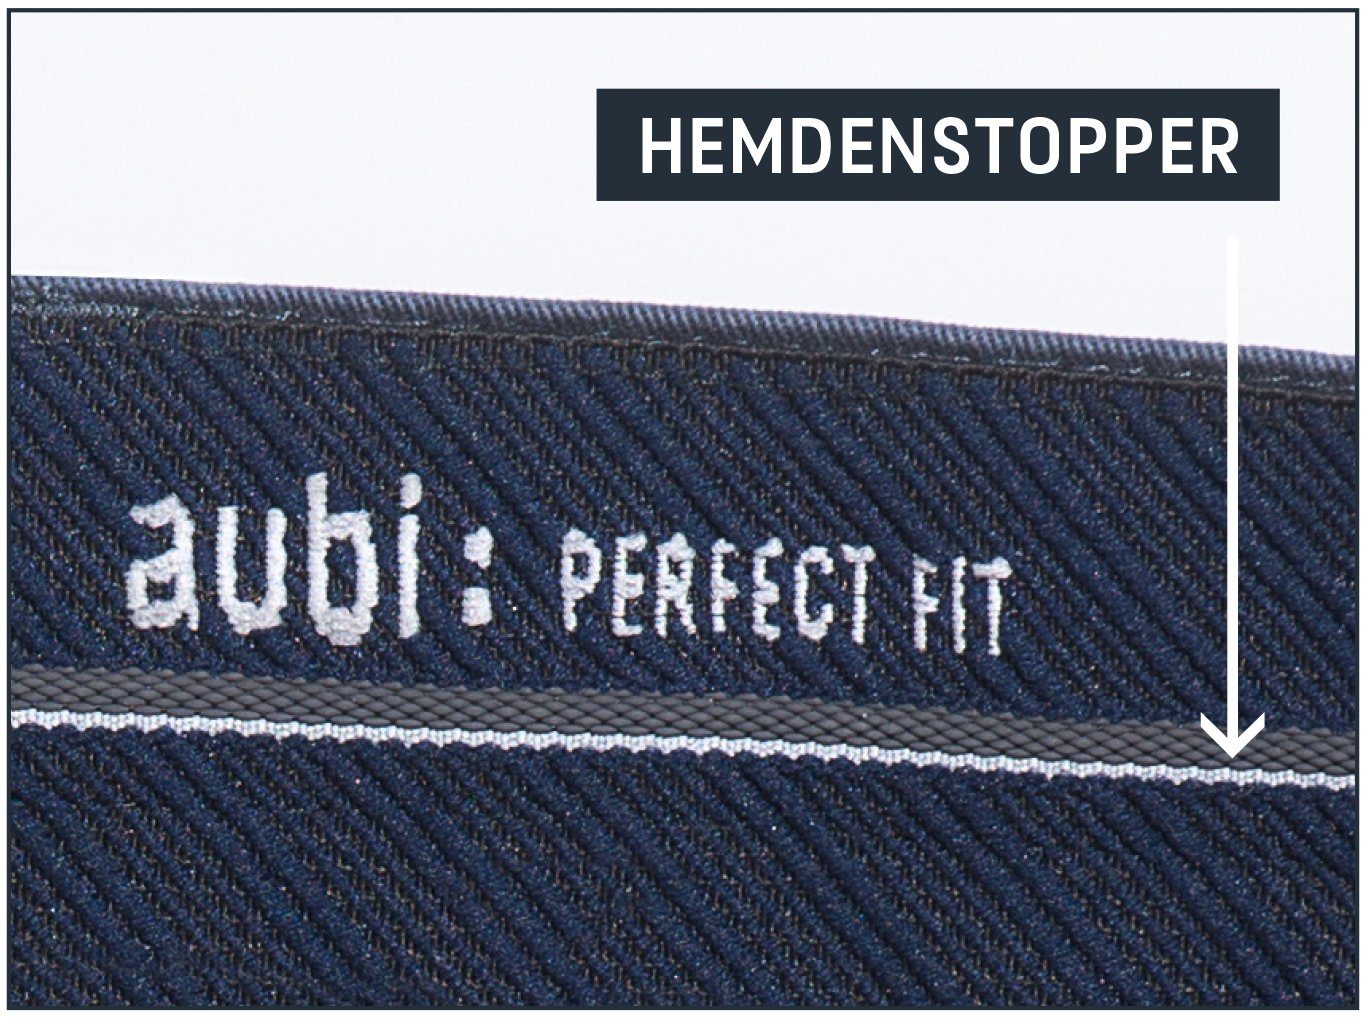 aubi 616 Herren Flex grey Shorts Stretch High Fit (54) Modell Baumwolle Bequeme Jeans Jeans Sommer aus Cargo Perfect aubi: